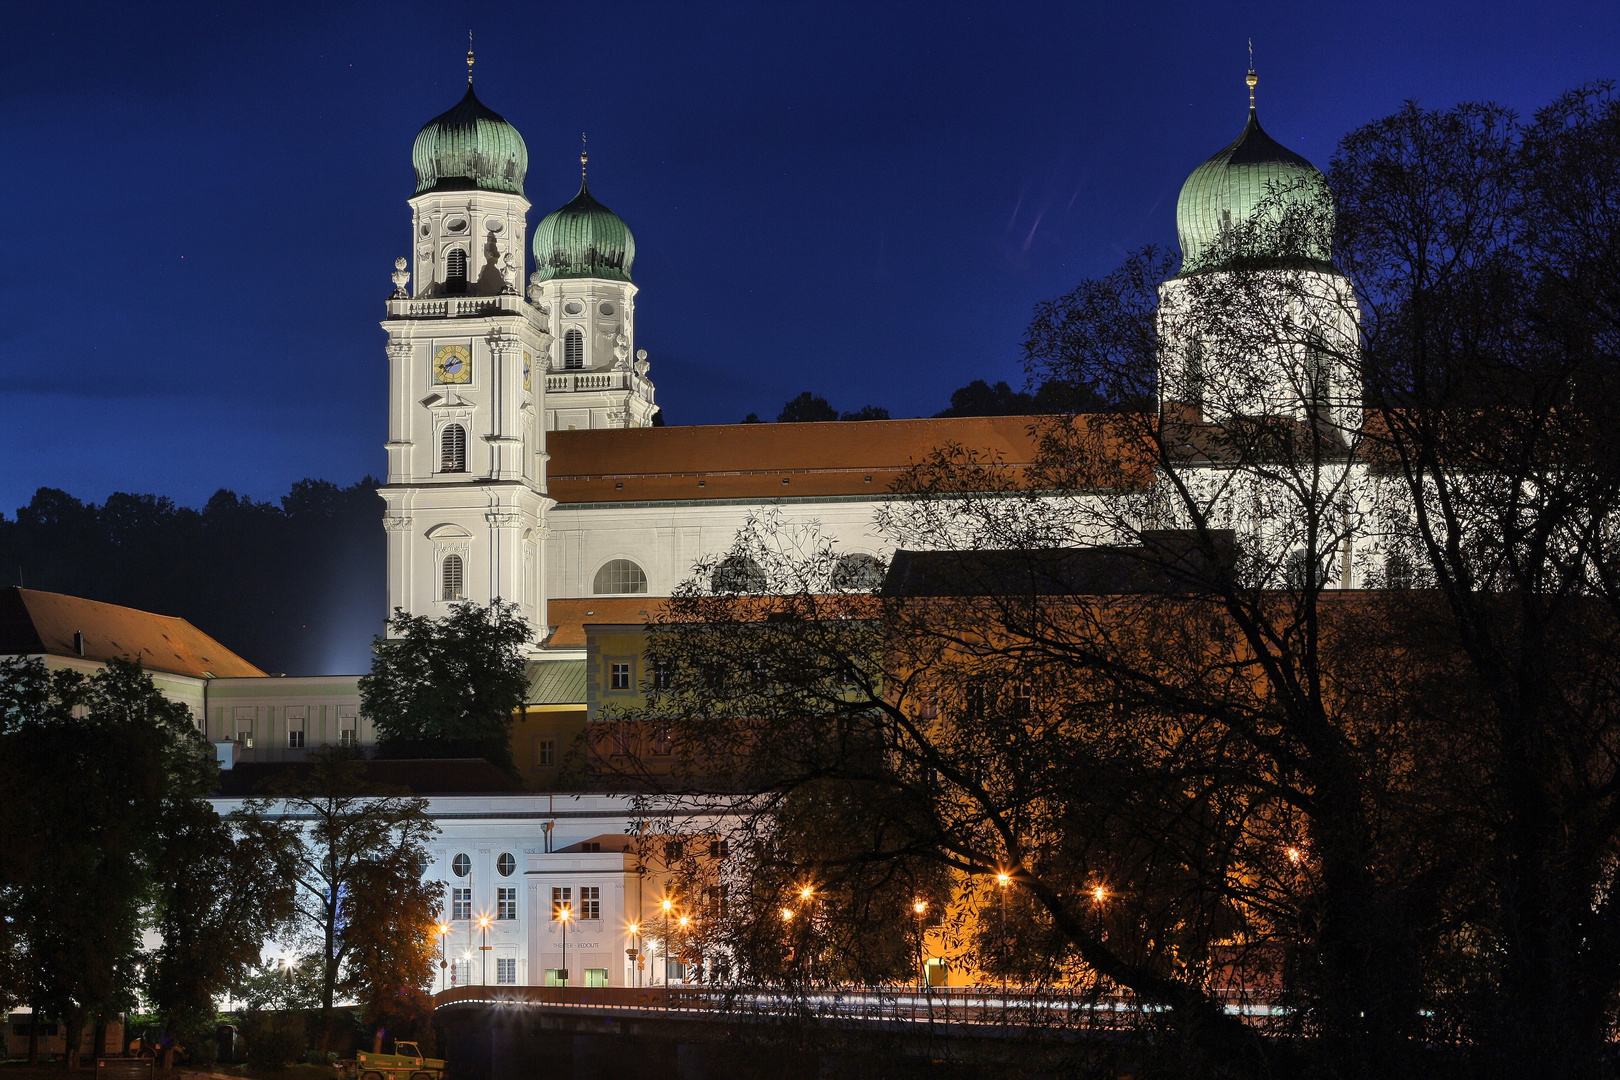 Stephansdom, Passau